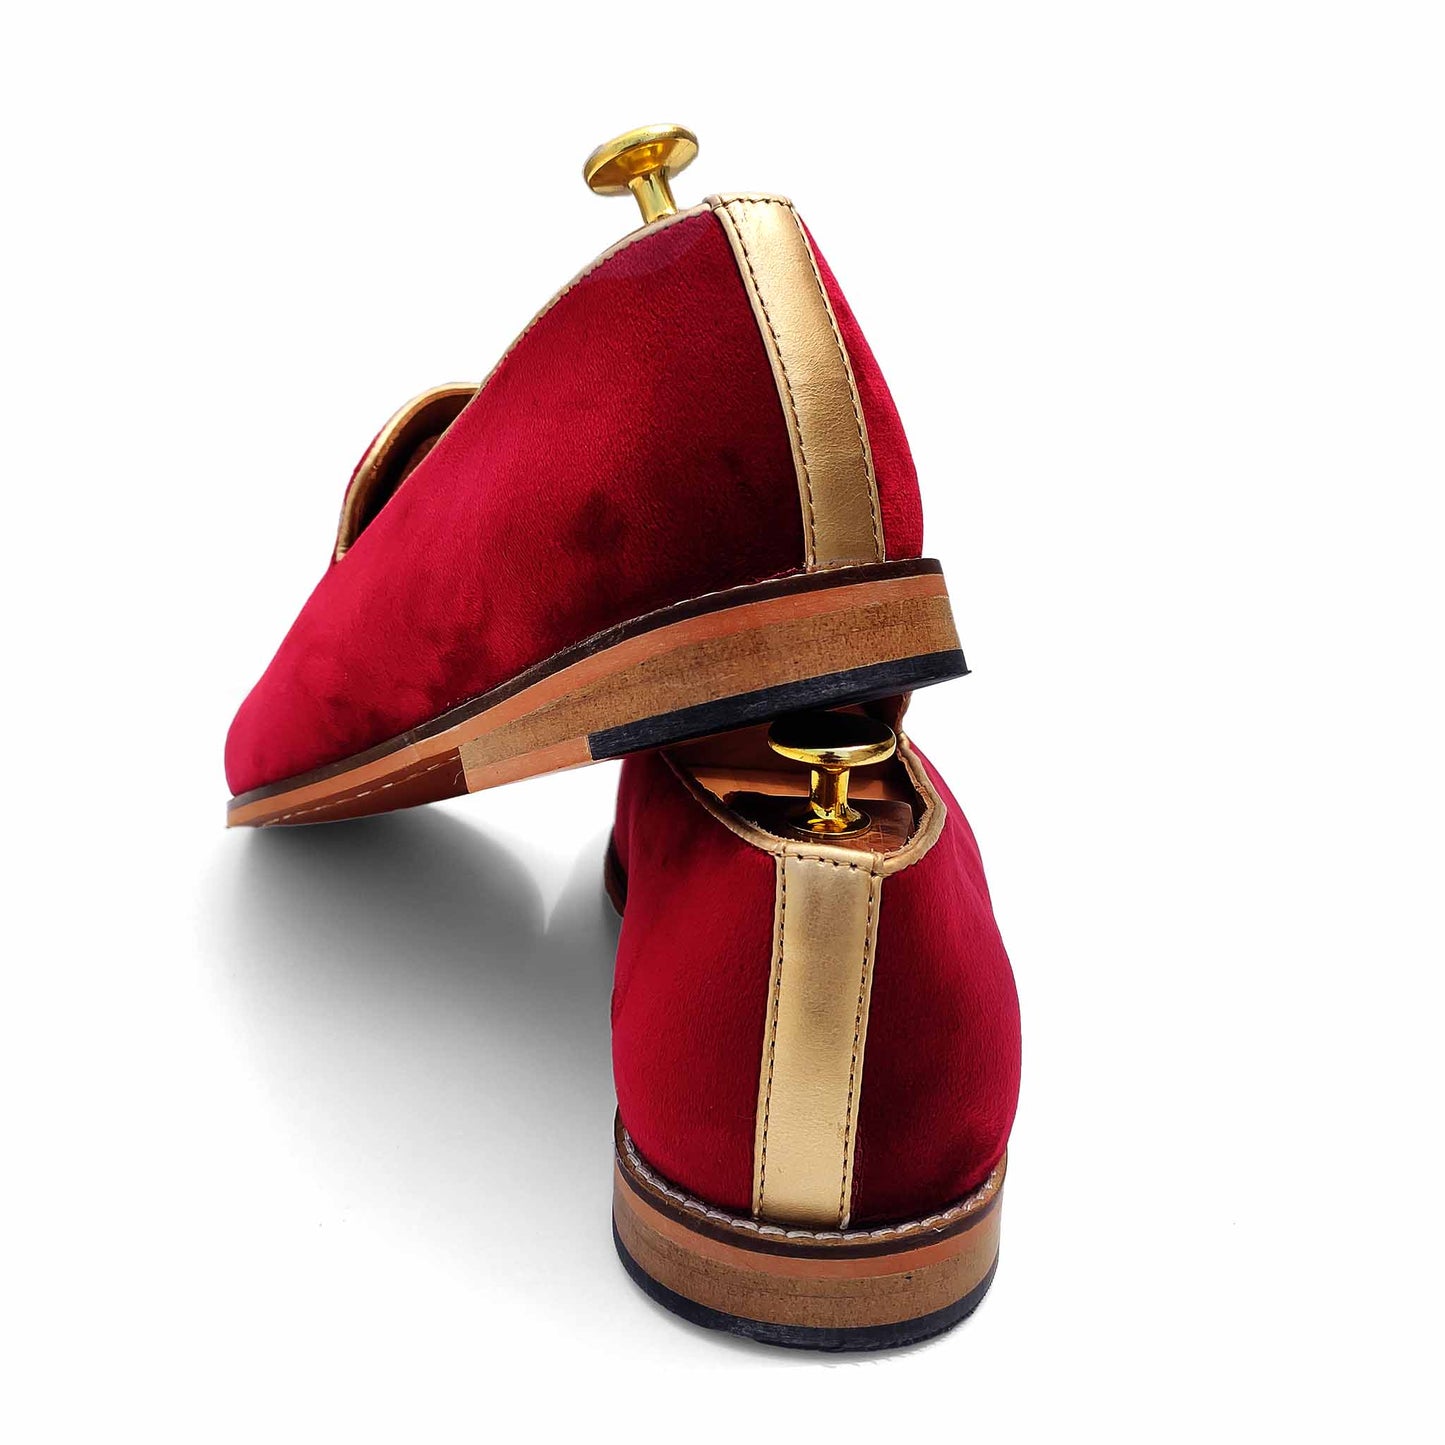 Maroon Velvet Antique Gold Zardozi Handwork Wedding Ethnic Shoes Loafers for Men